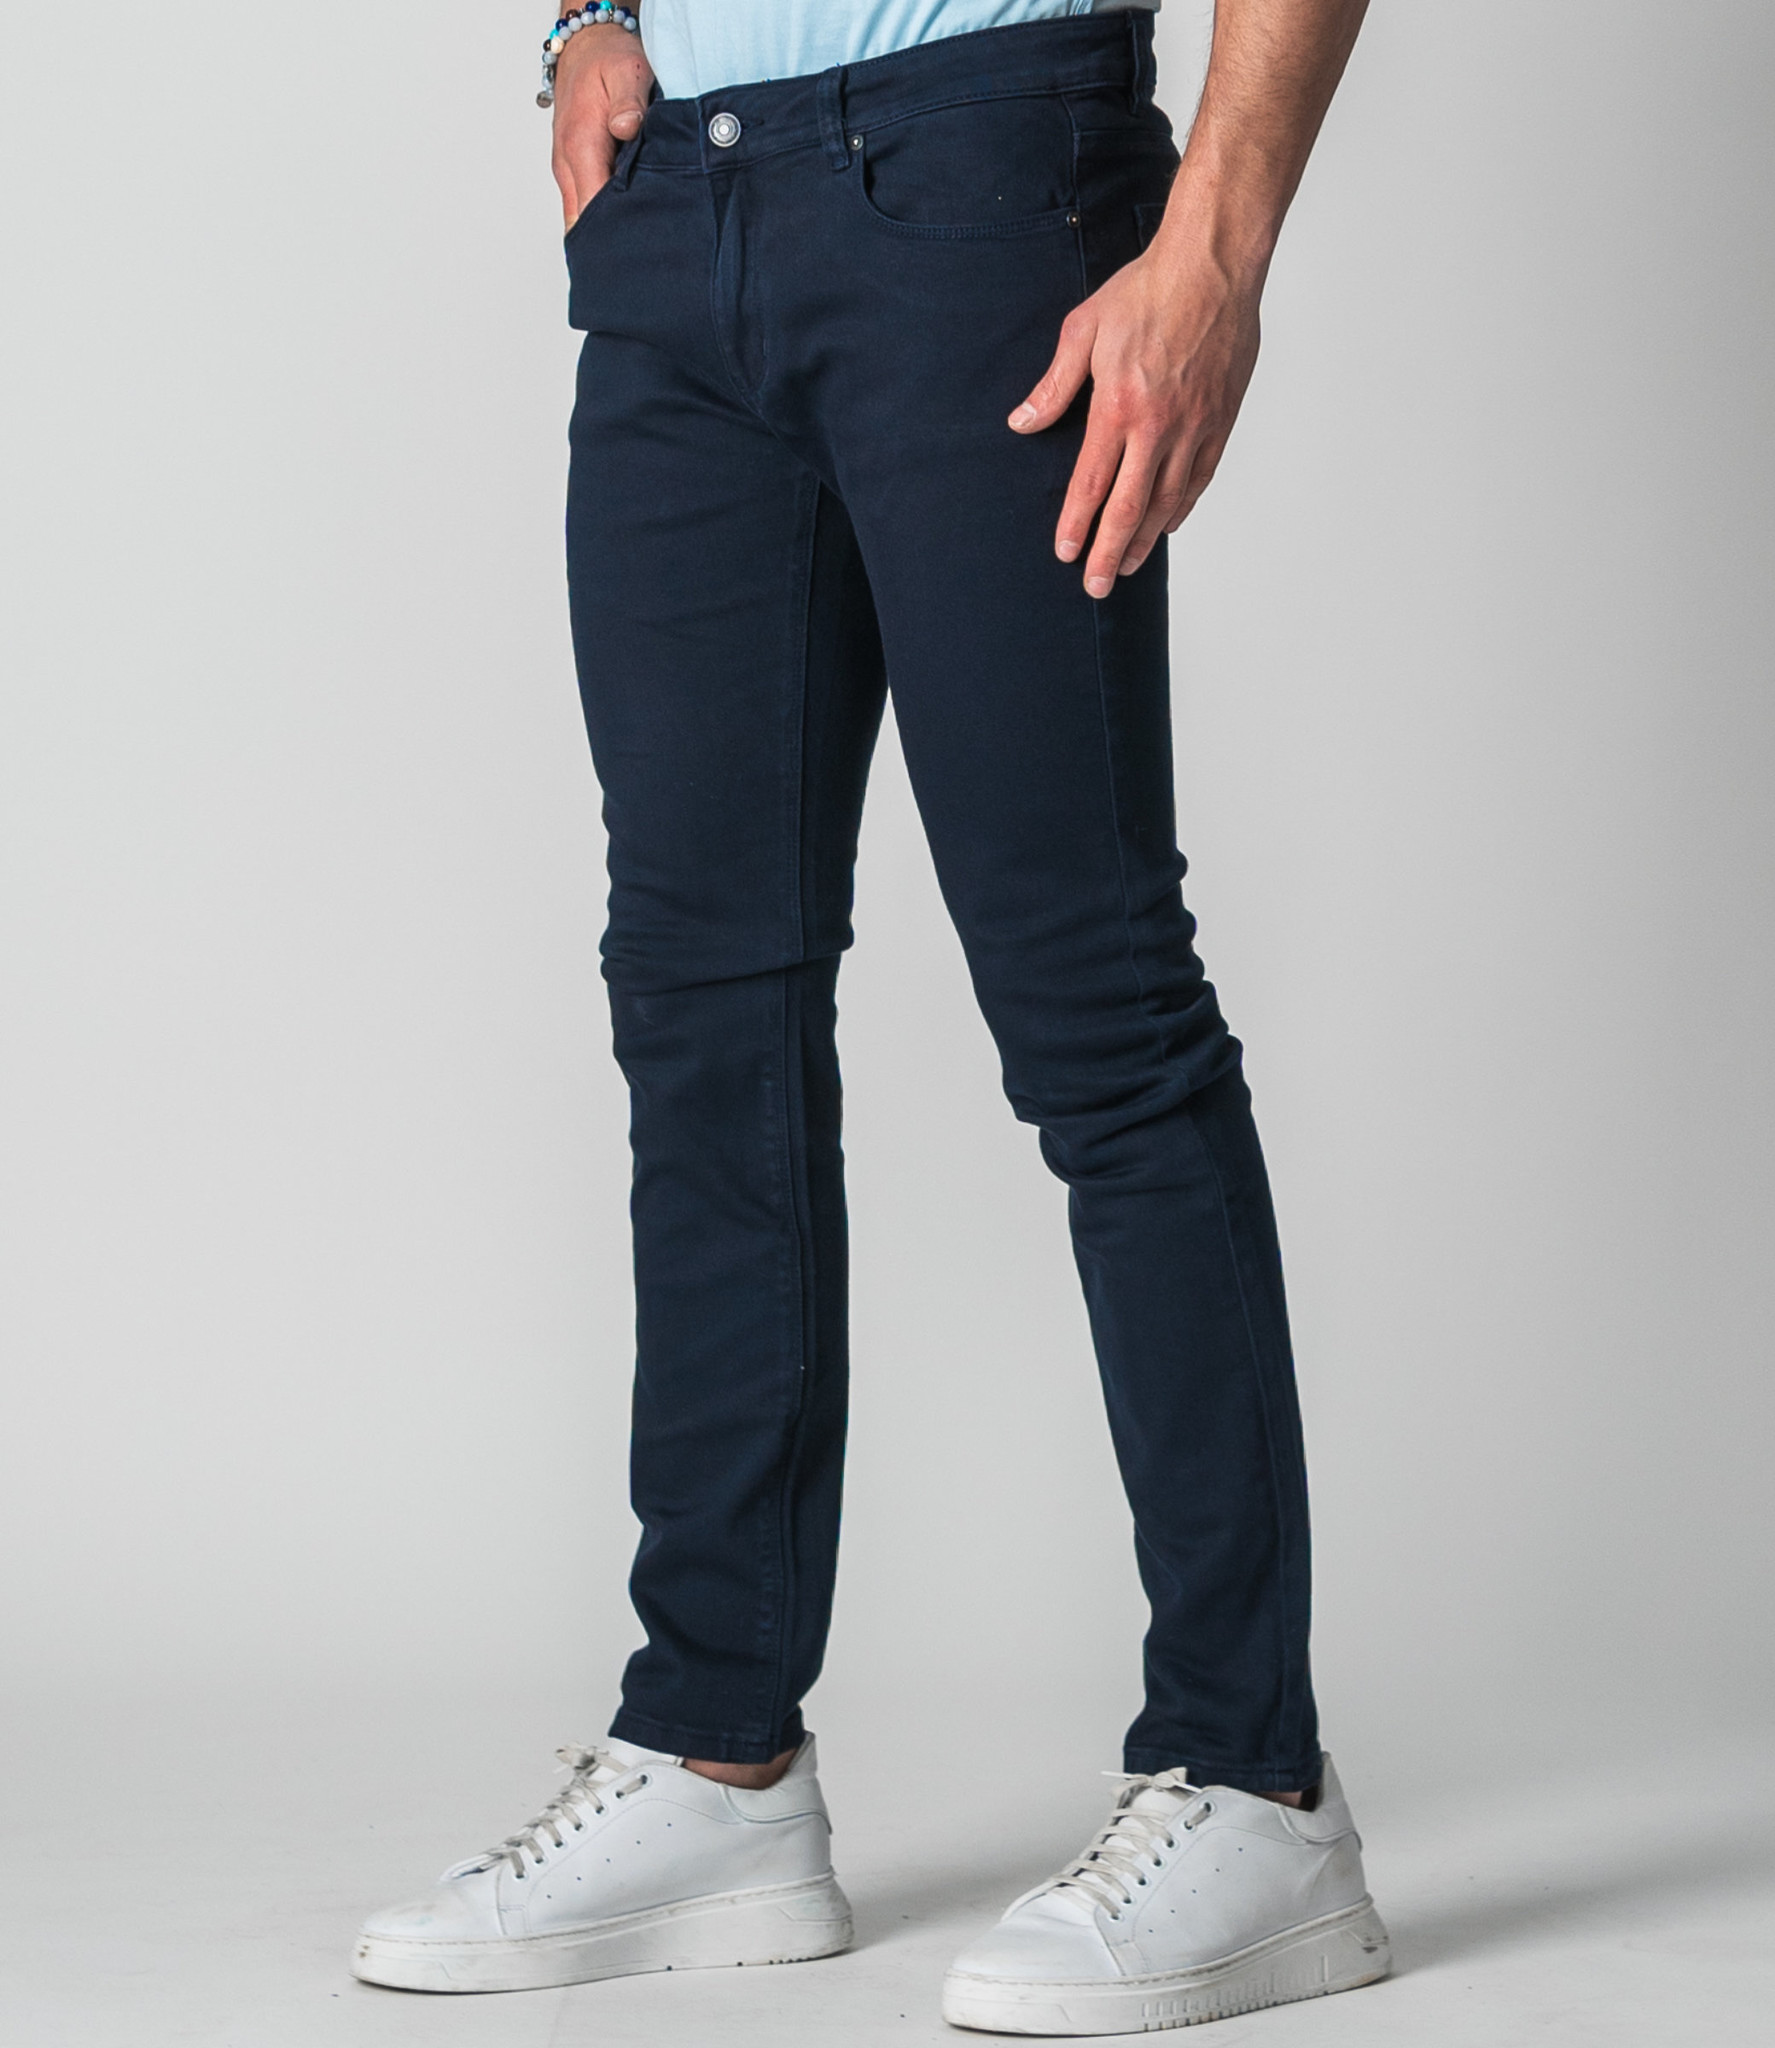 PETER-HD Navy - Slim Fit Jeans